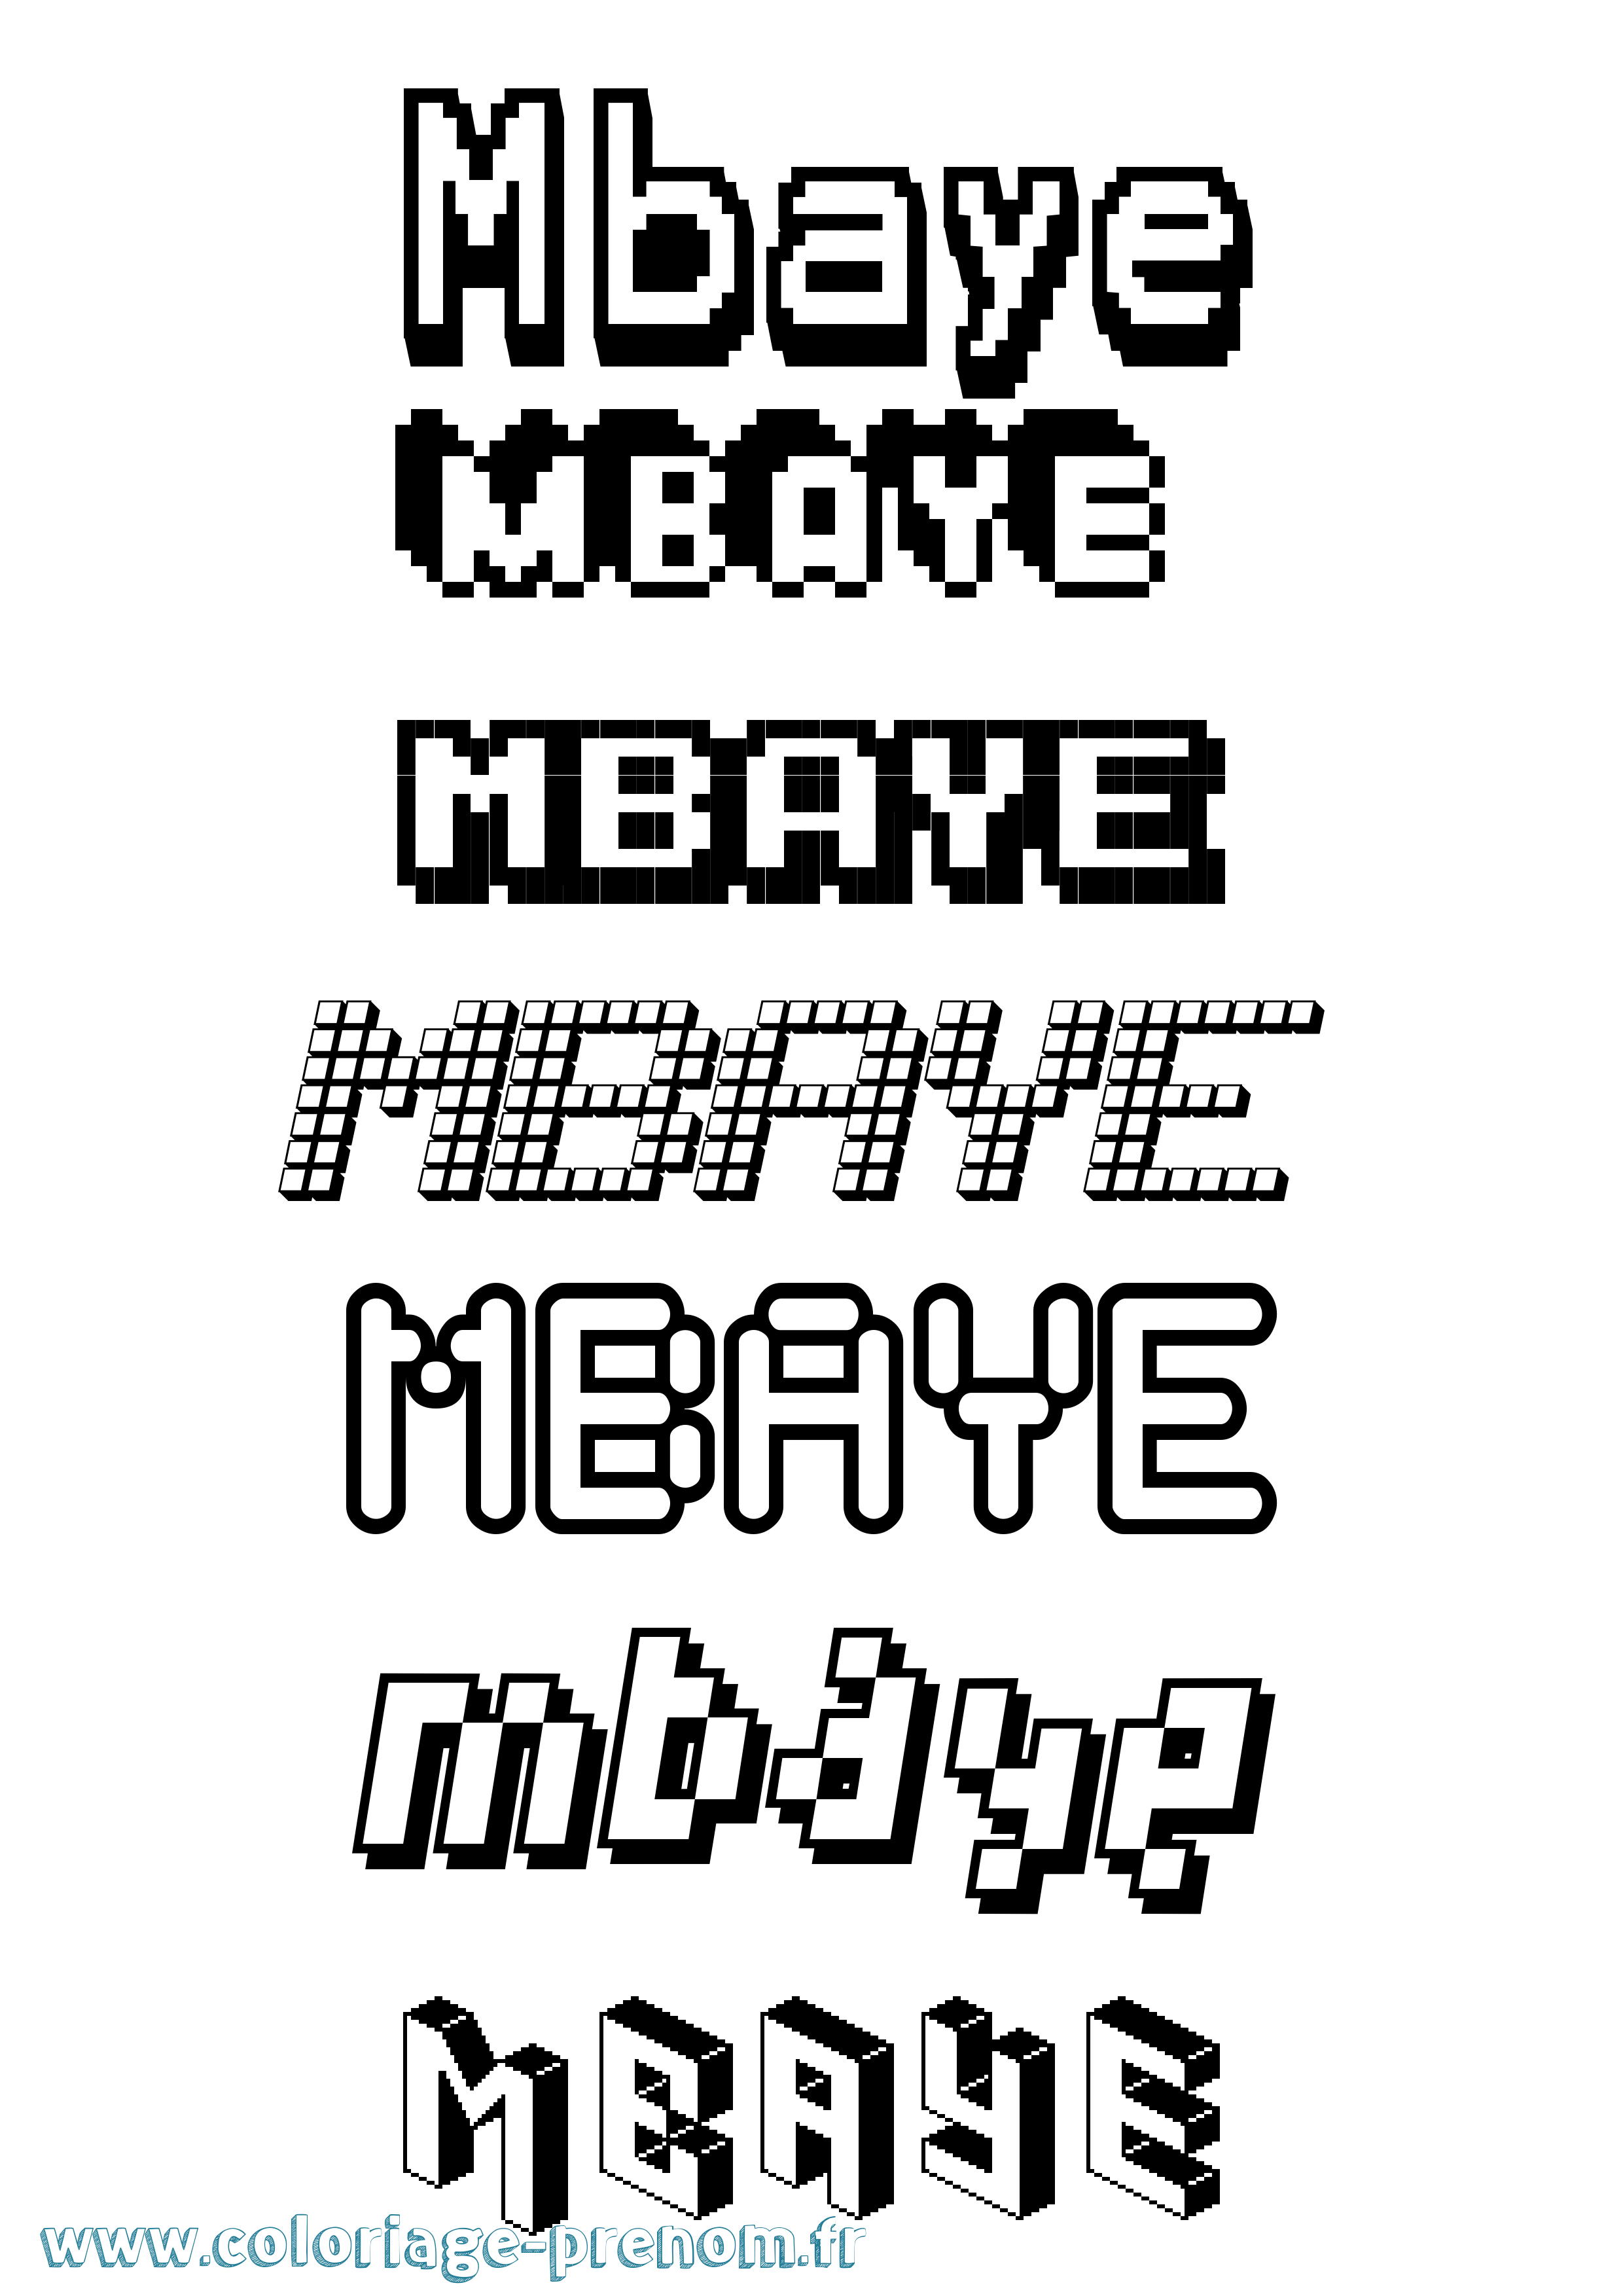 Coloriage prénom Mbaye Pixel